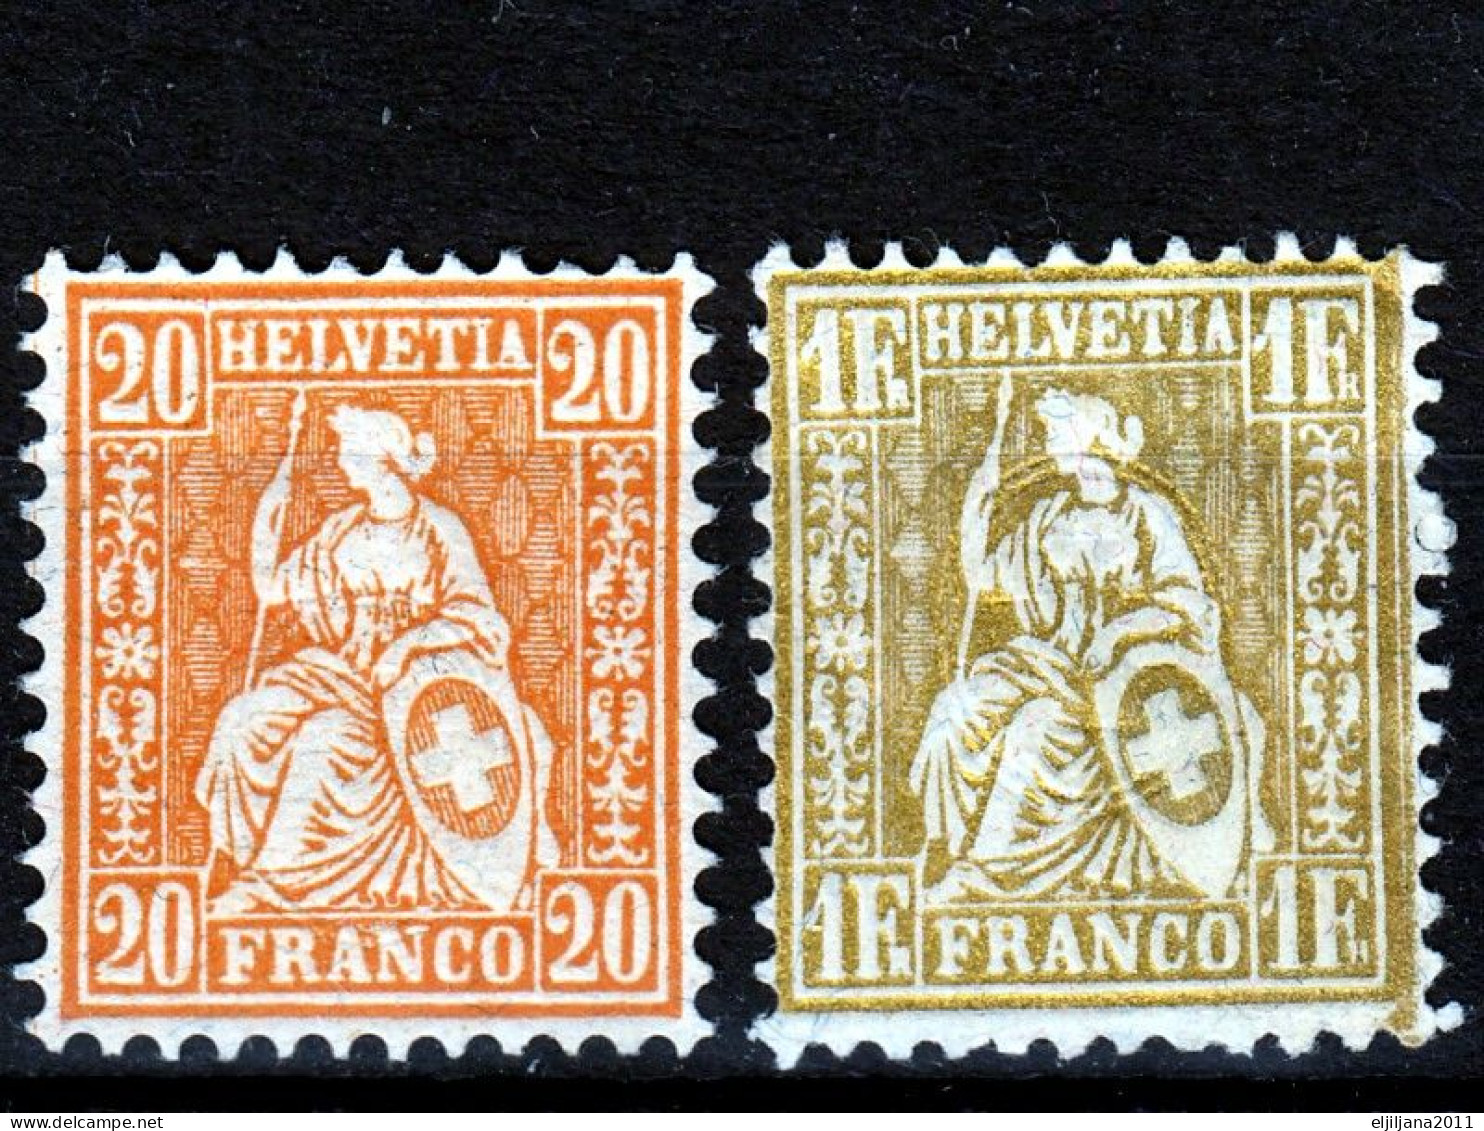 ⁕ Switzerland - SVIZZERA - SUISSE 1862 - 1881 ⁕ SEATED HELVETIA 20 C. & 1 Fr. Franco ⁕ 2v Unused - No Gum - Neufs